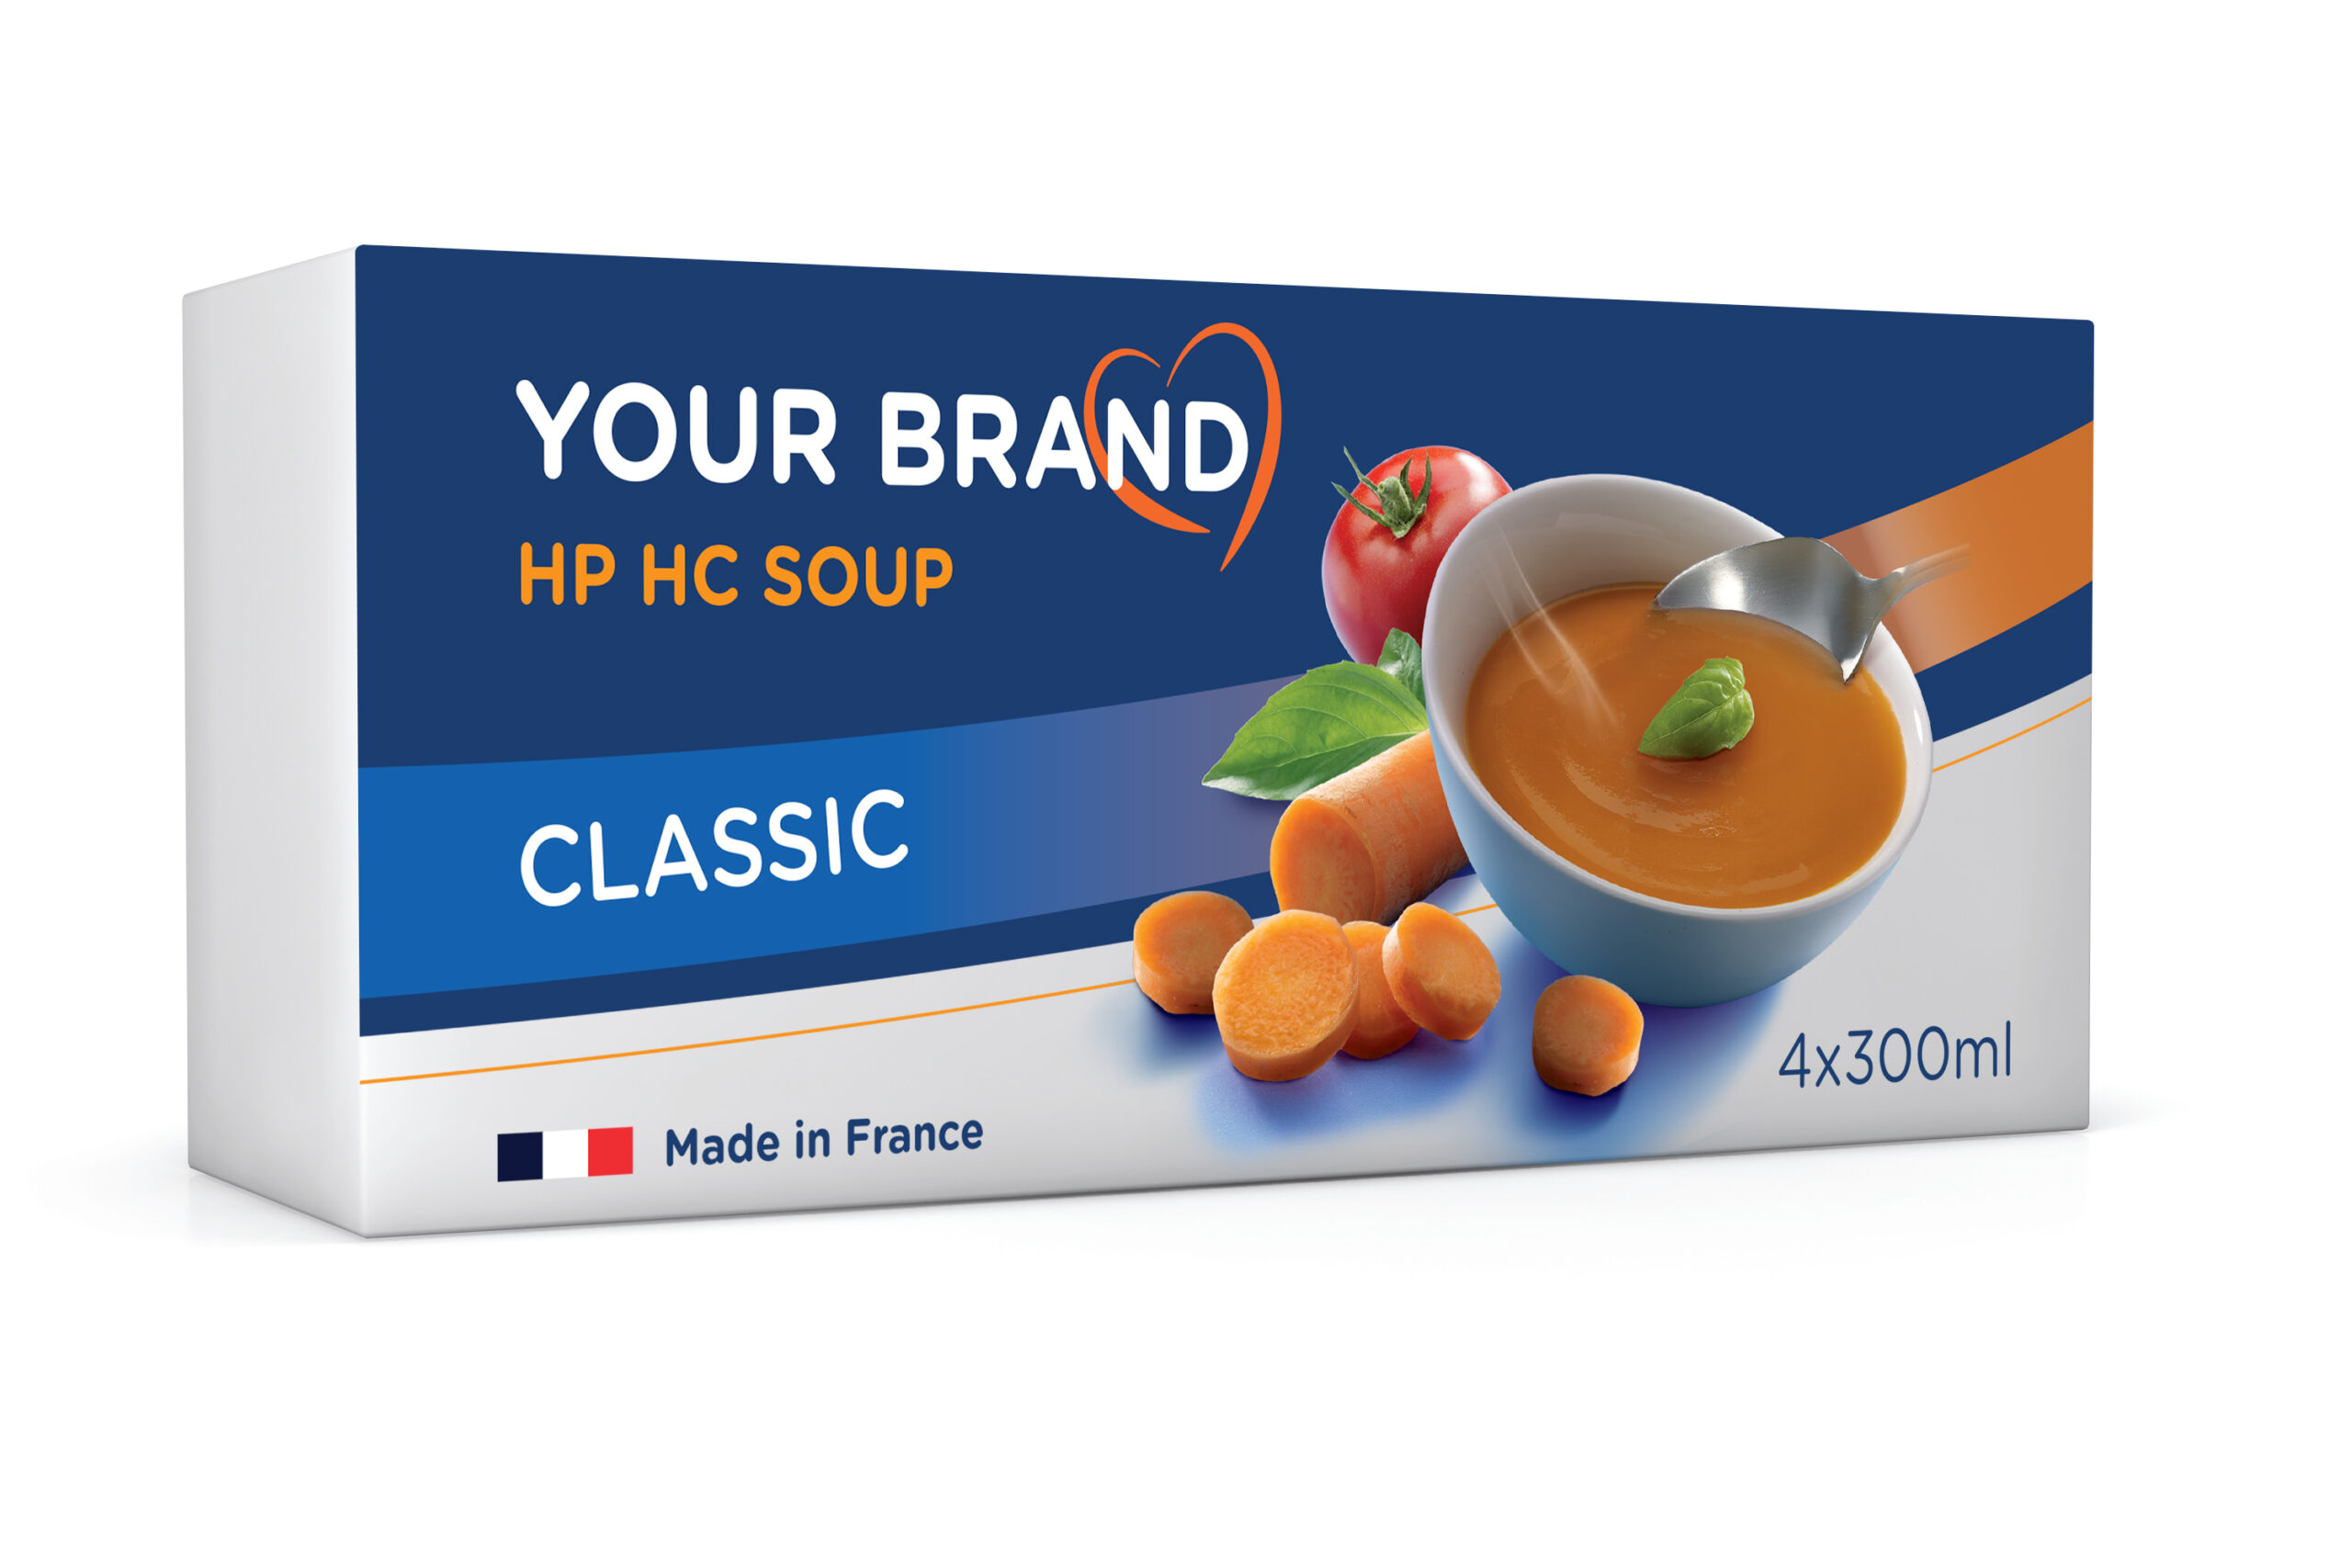 HP HC soup